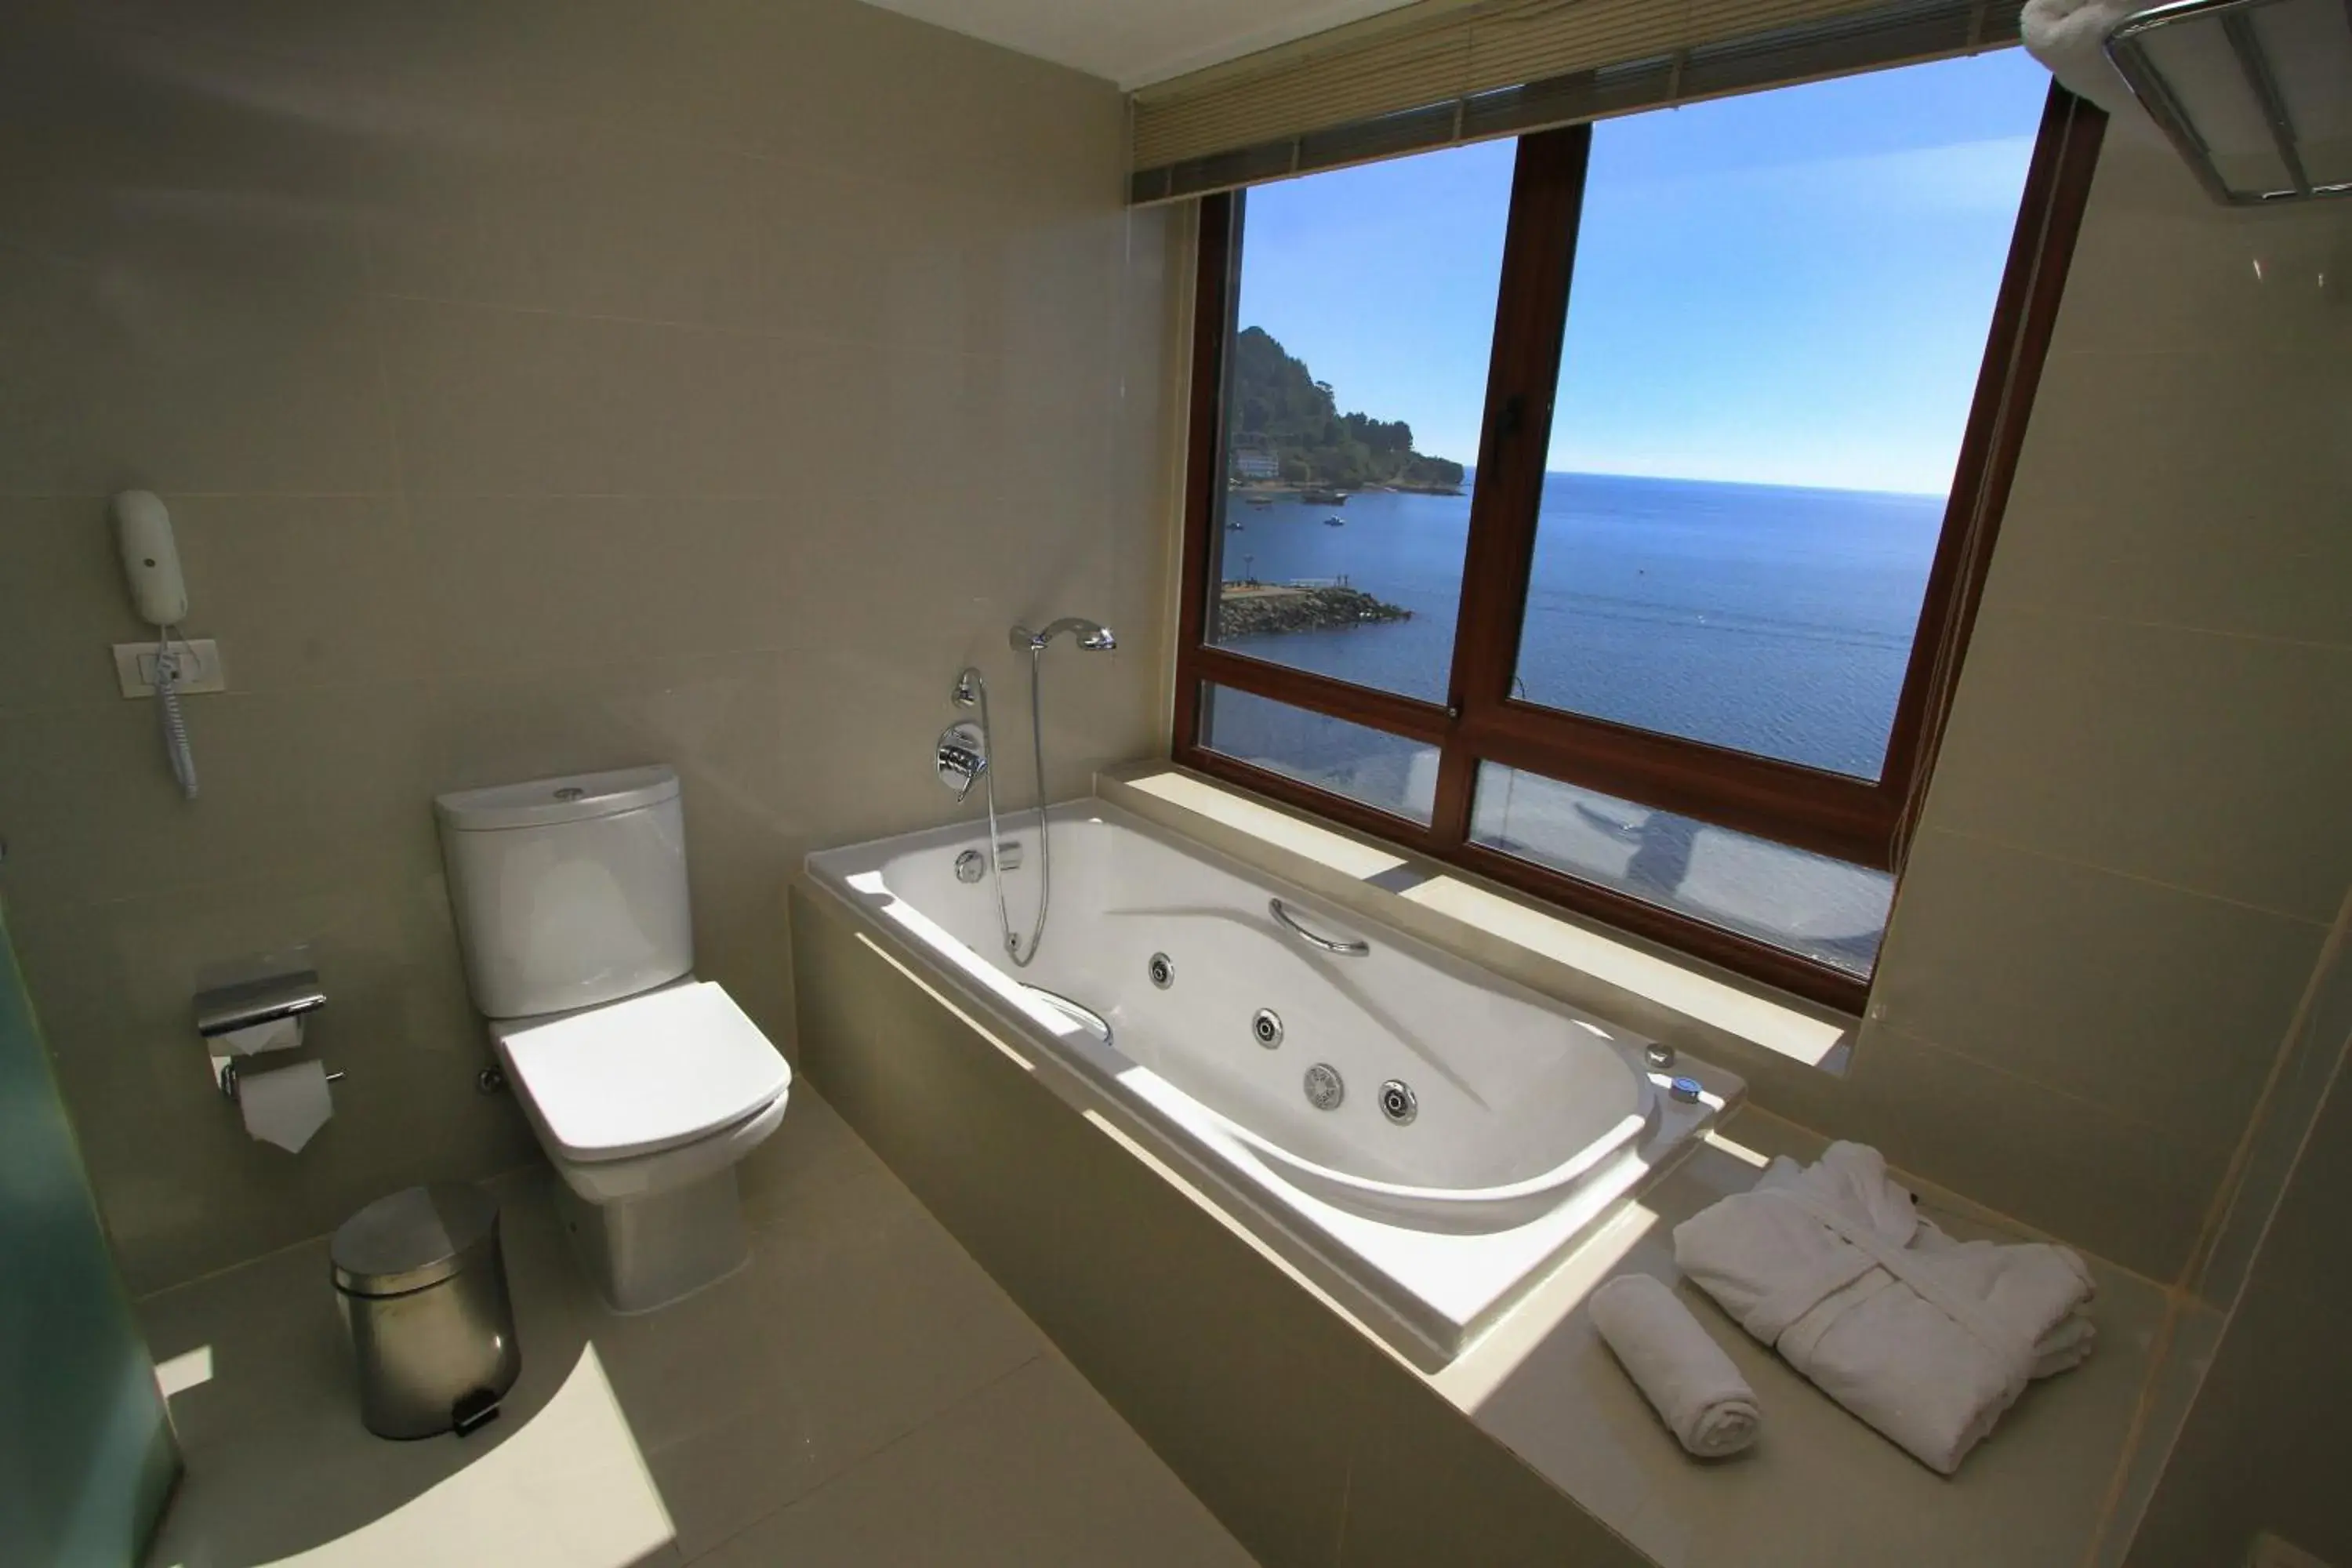 Bathroom in Radisson Hotel Puerto Varas